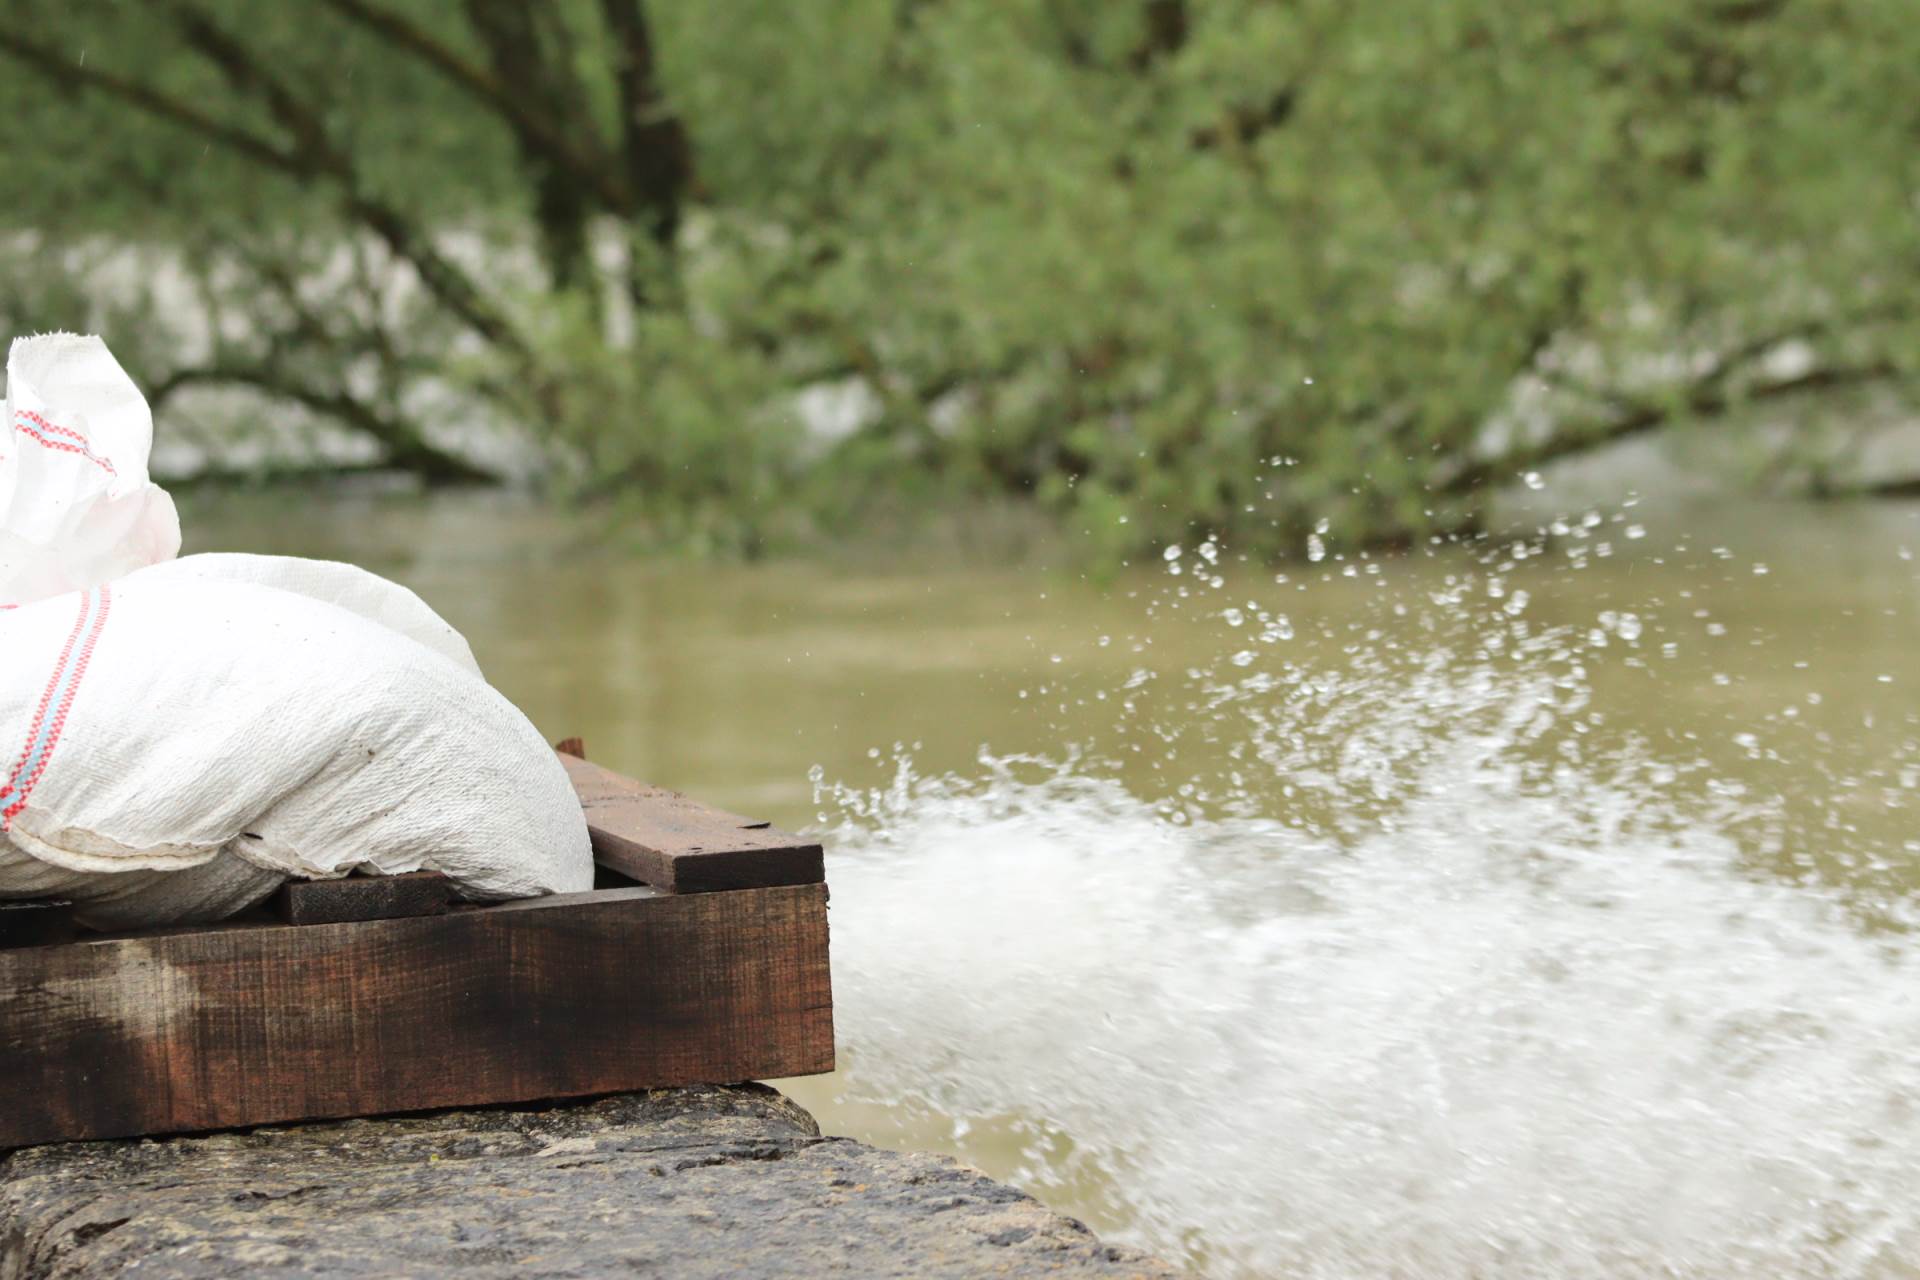  Izdato upozorenje: Moguće poplave u slivu Bosne 